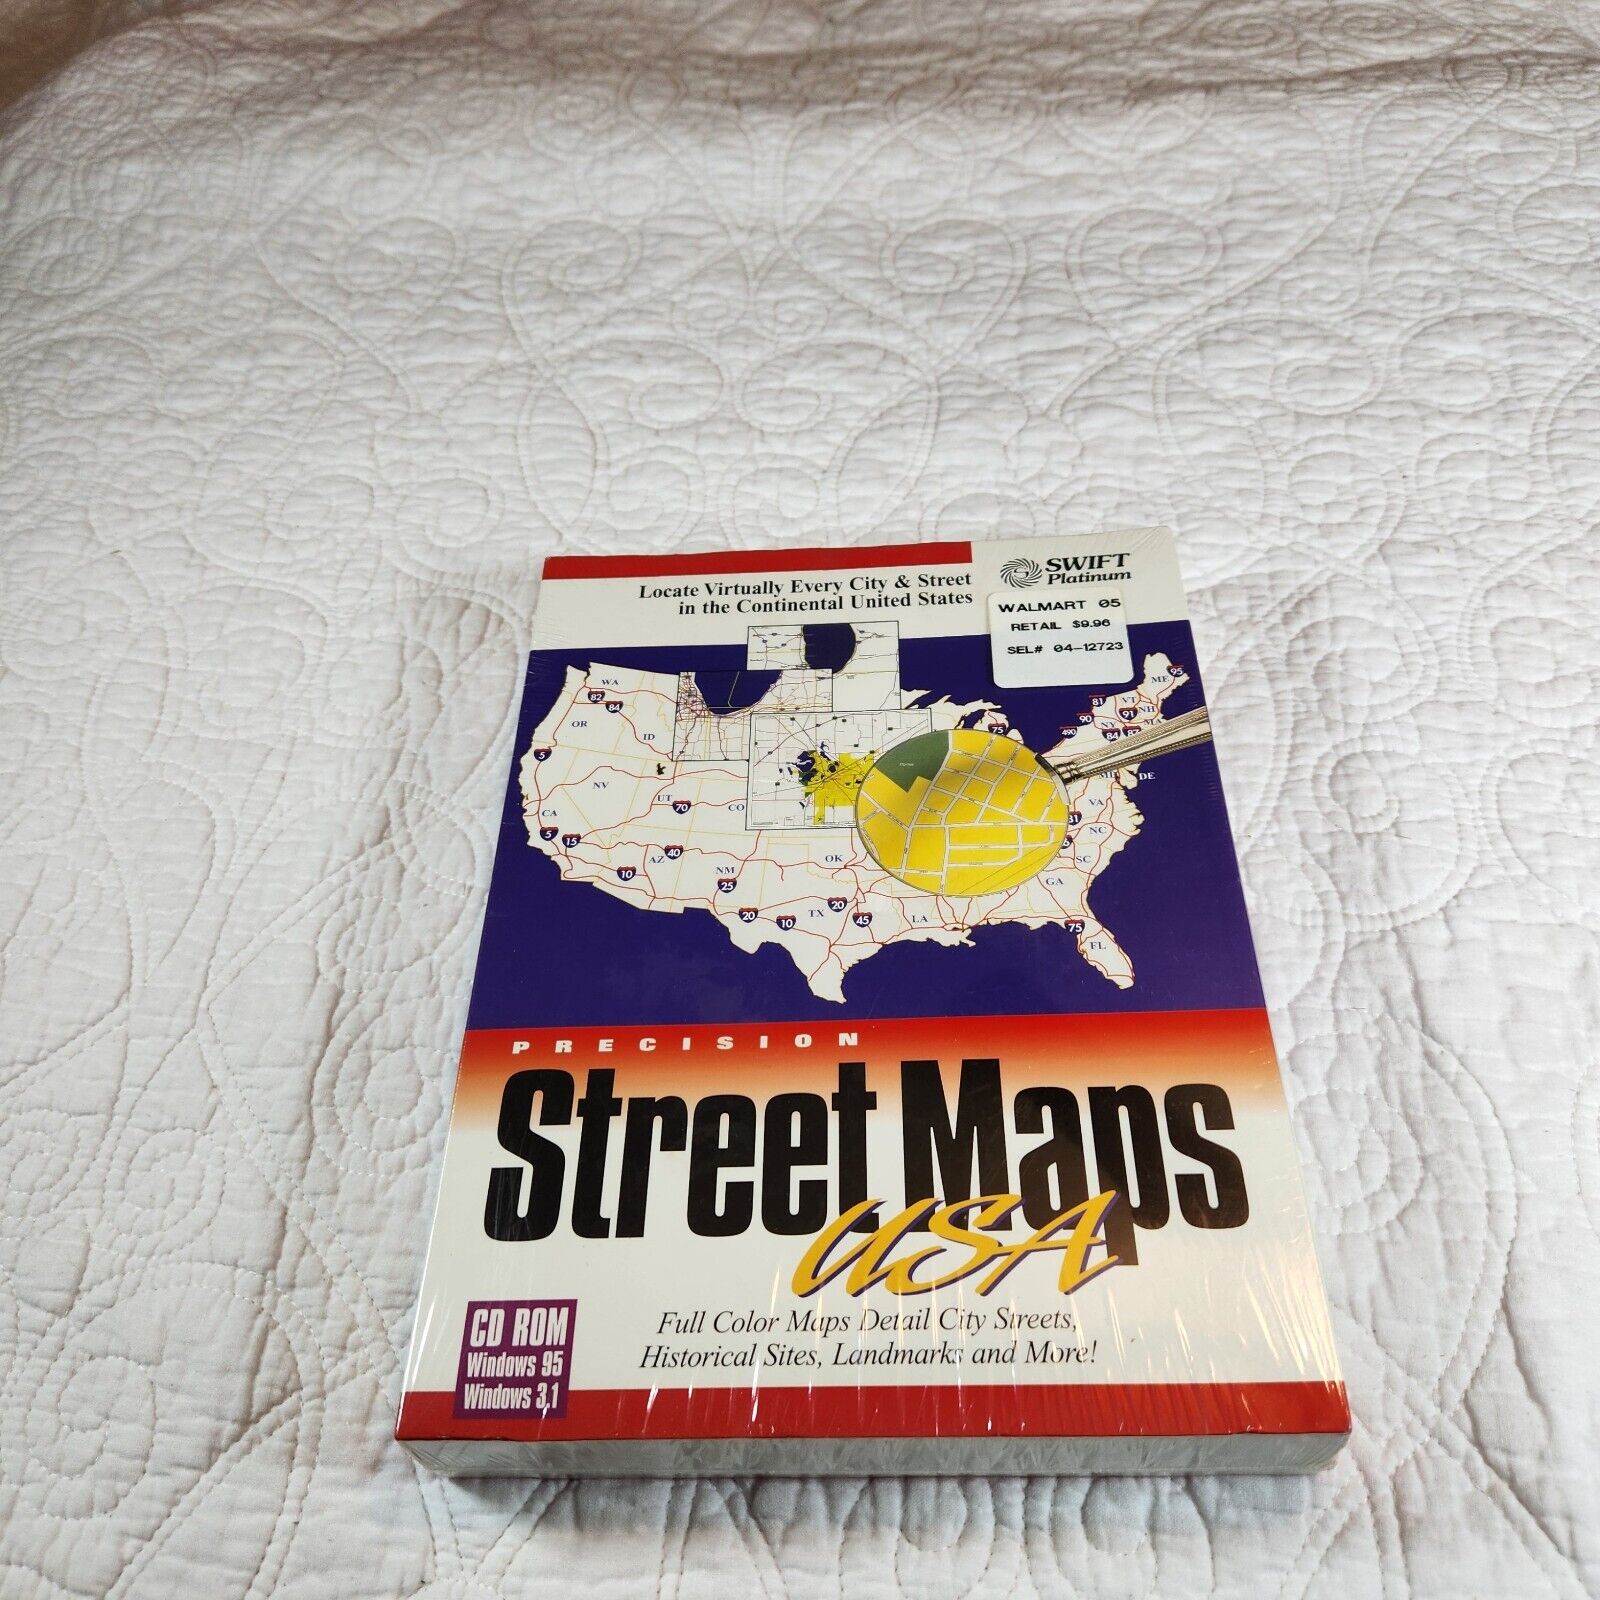 NIB Precision Street Maps CD ROM Windows 95 3.1 1997